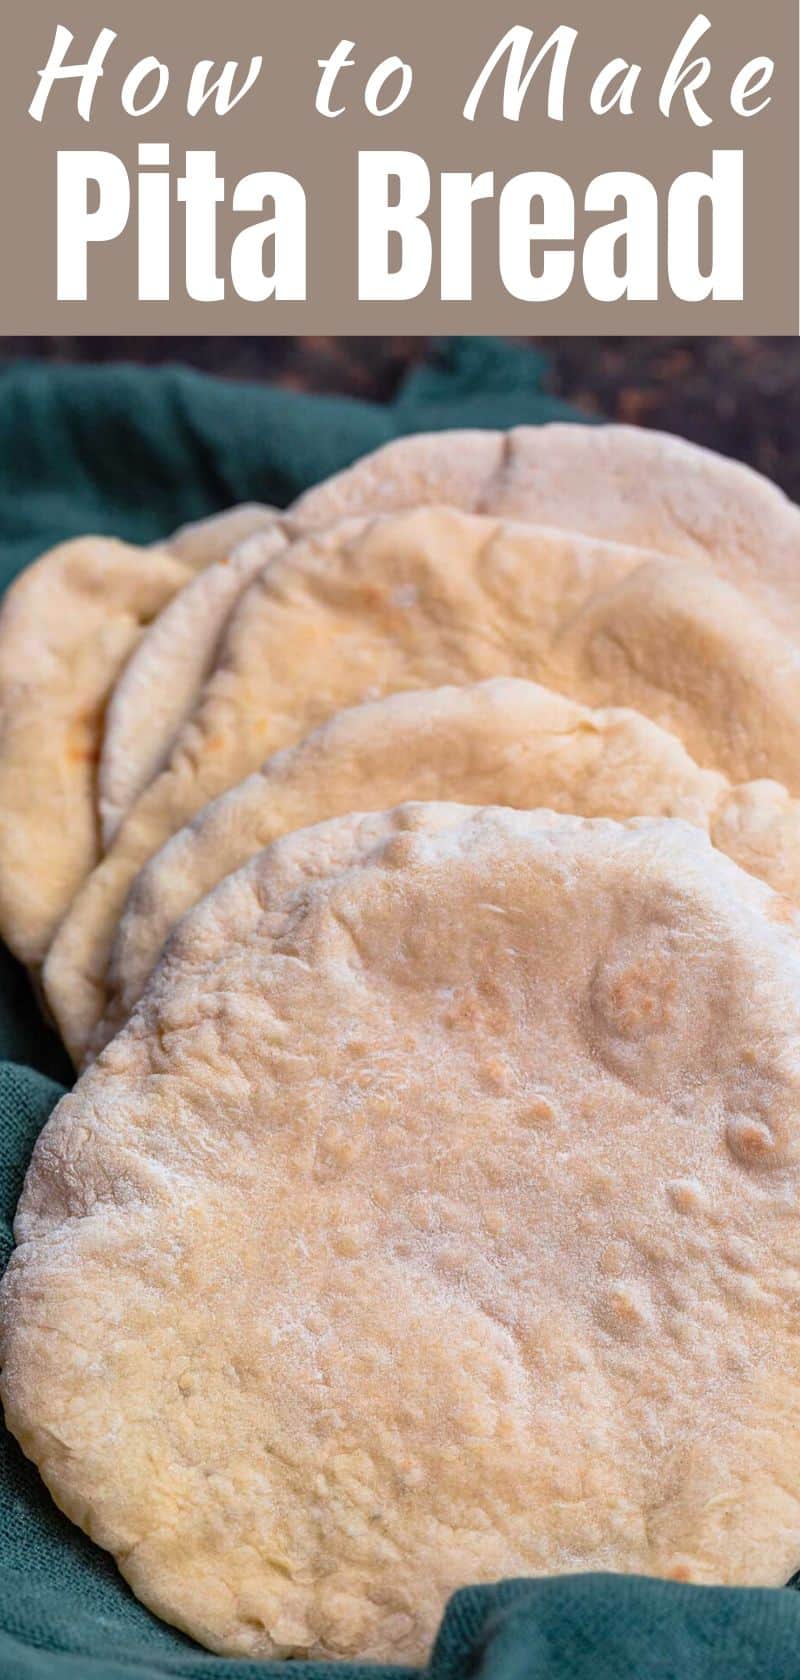 Easy Pita Bread Recipe (How to Make Pita Bread)| The Mediterranean Dish